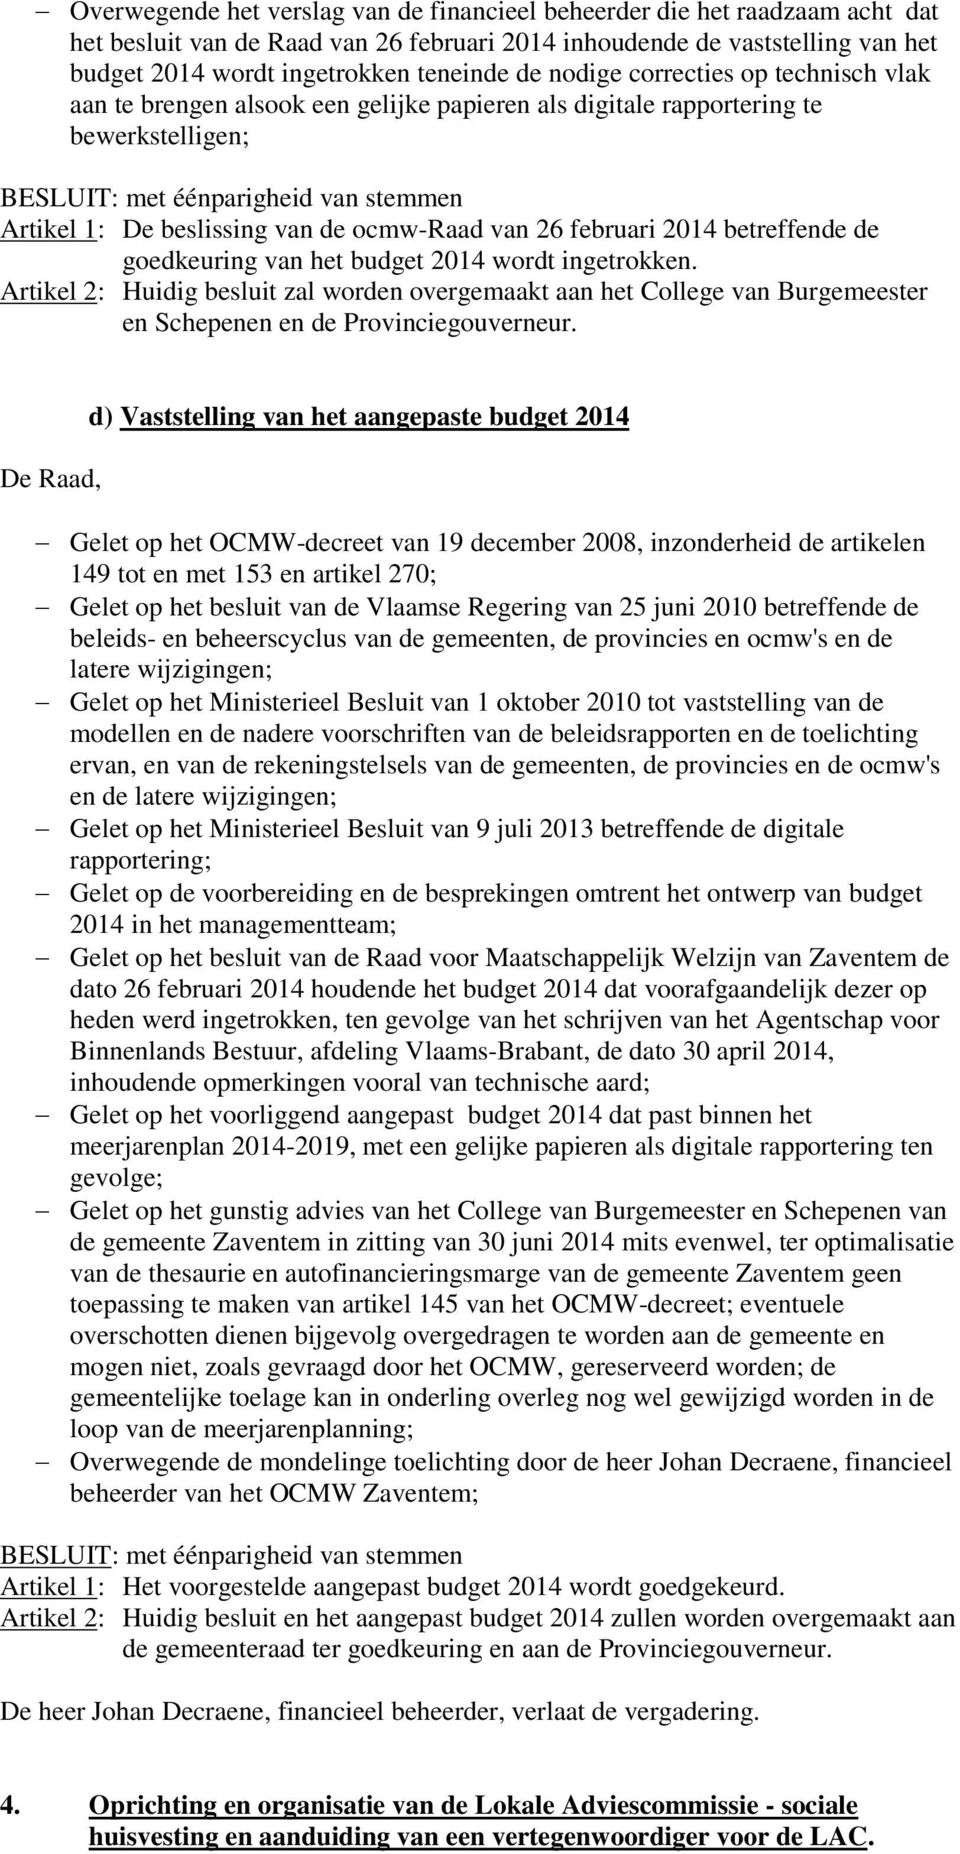 de goedkeuring van het budget 2014 wordt ingetrokken. Artikel 2: Huidig besluit zal worden overgemaakt aan het College van Burgemeester en Schepenen en de Provinciegouverneur.